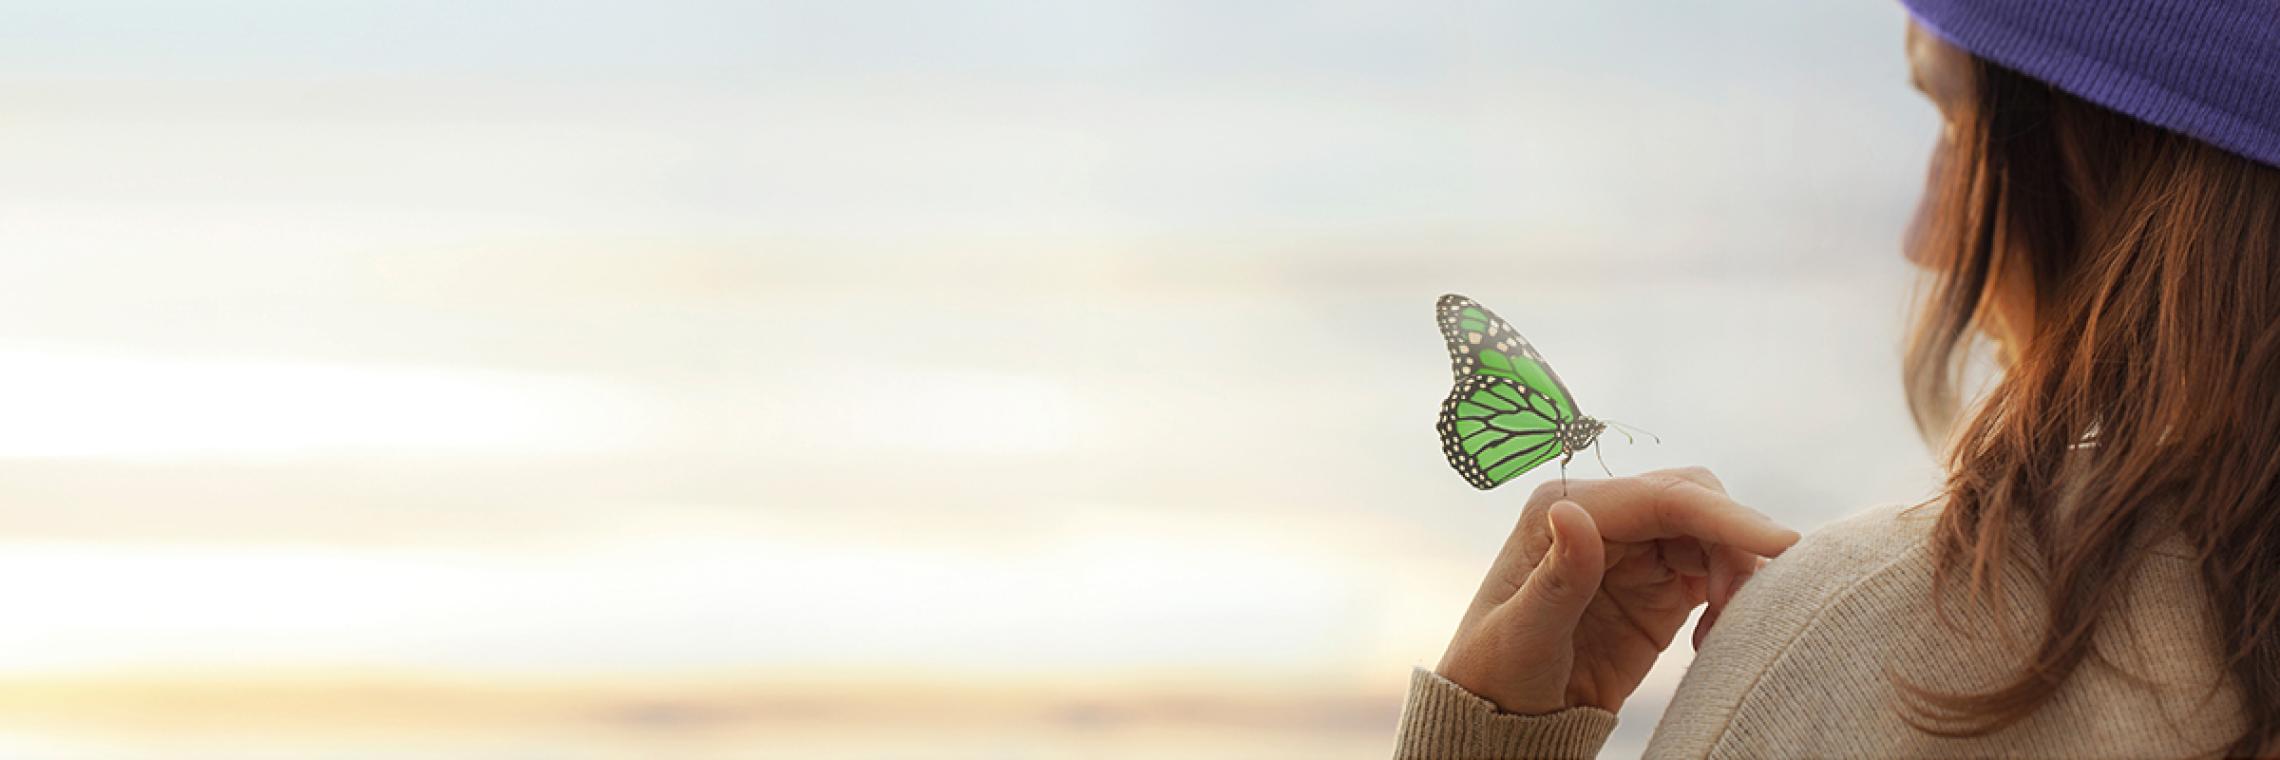 Psoriasis Initiative Ich Titelbild:  Frau mit Schmetterling